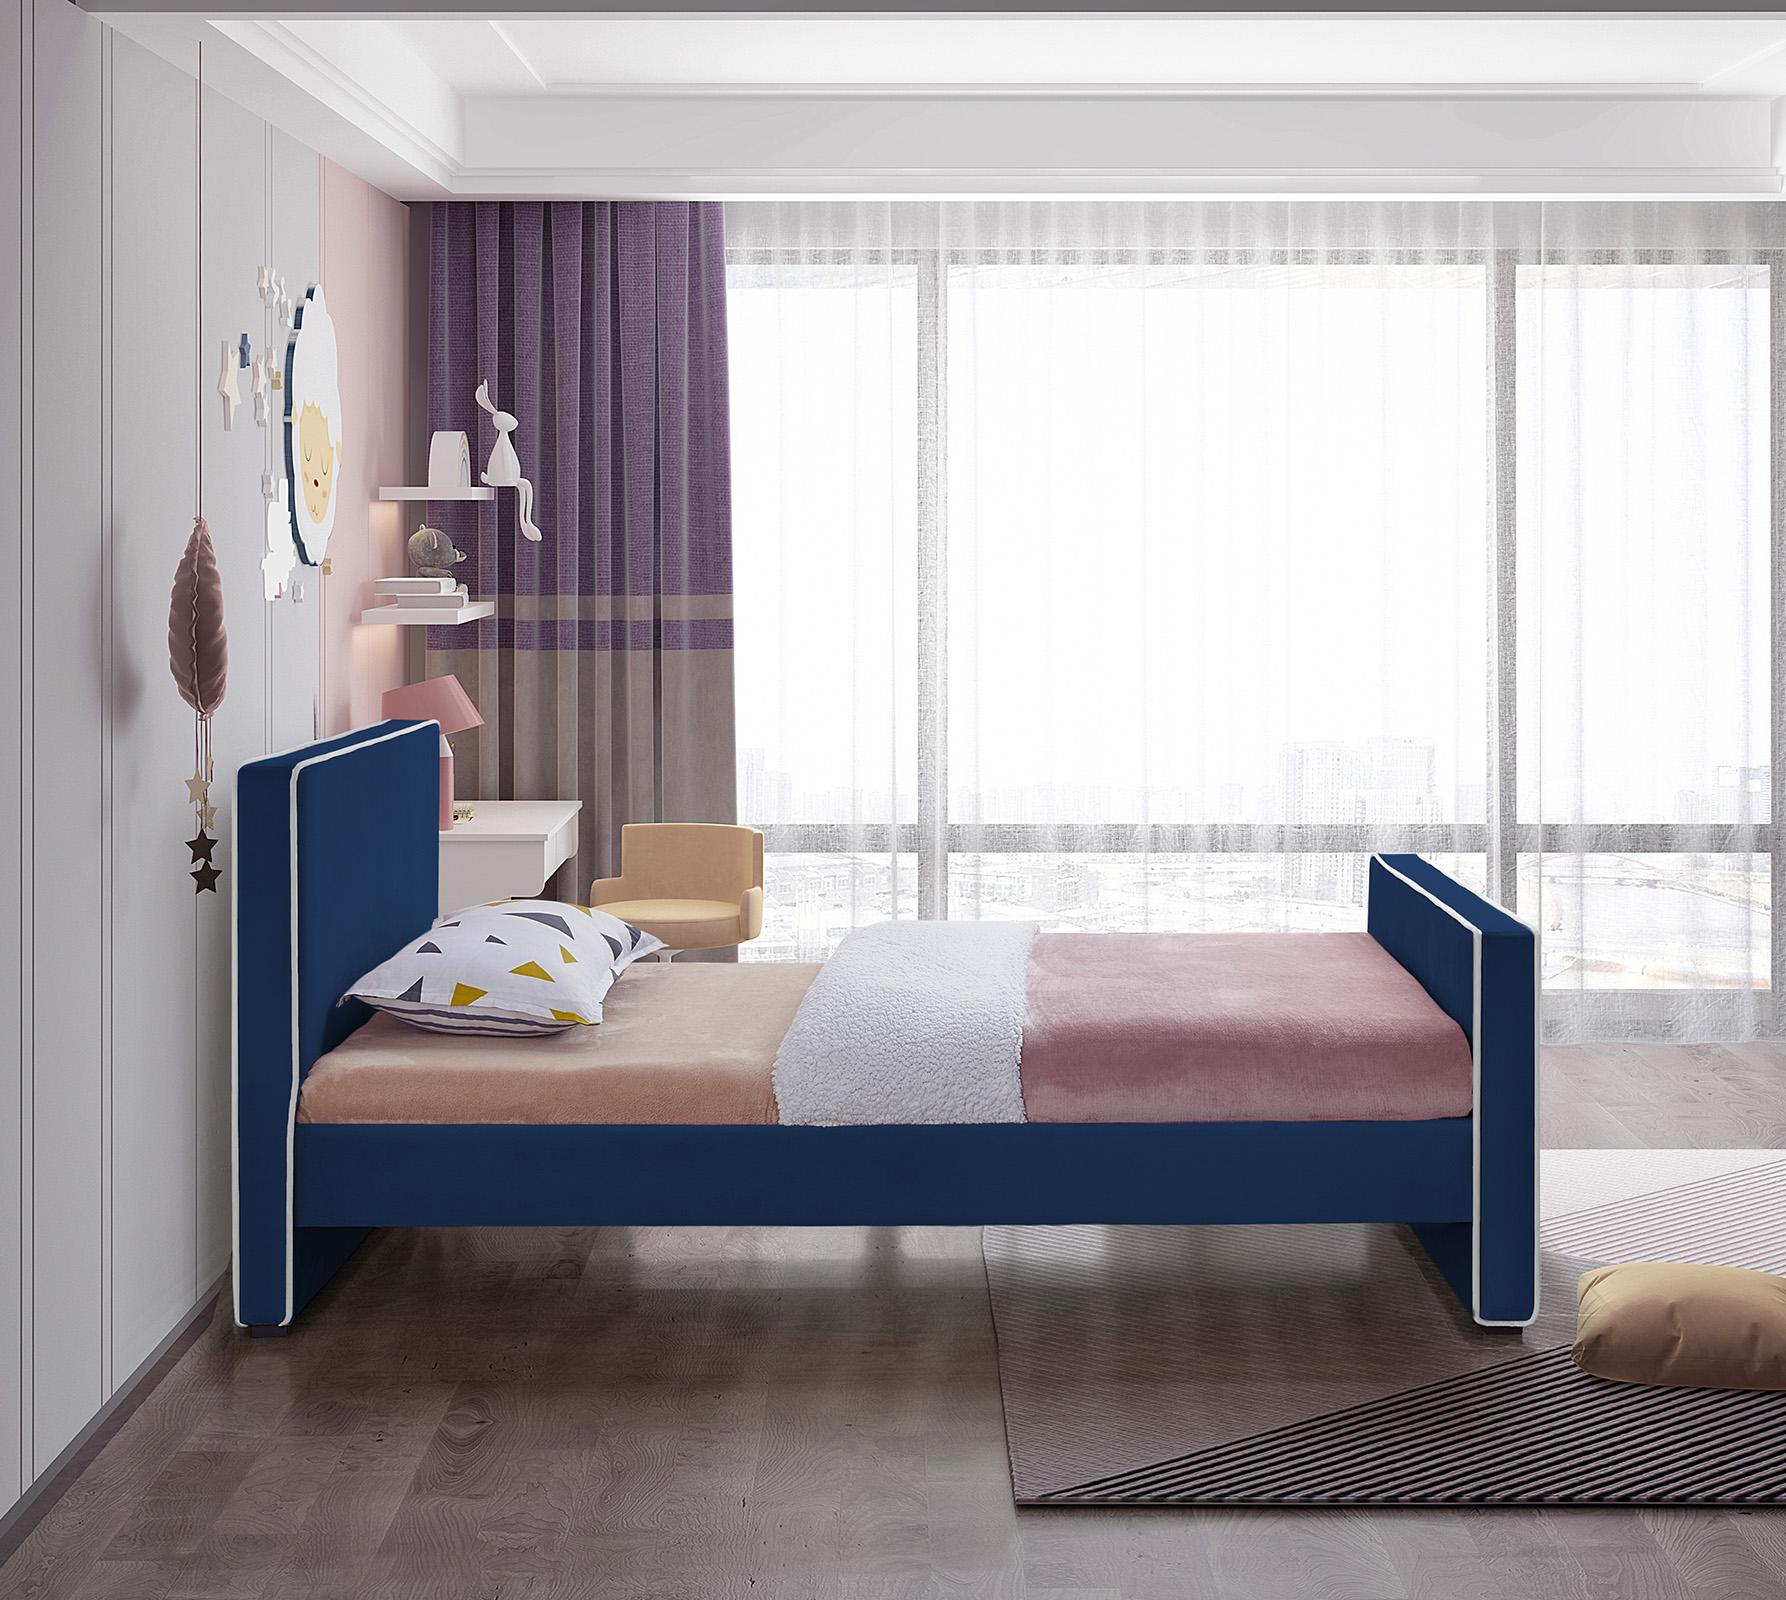 

    
DillardNavy-T Meridian Furniture Platform Bed
